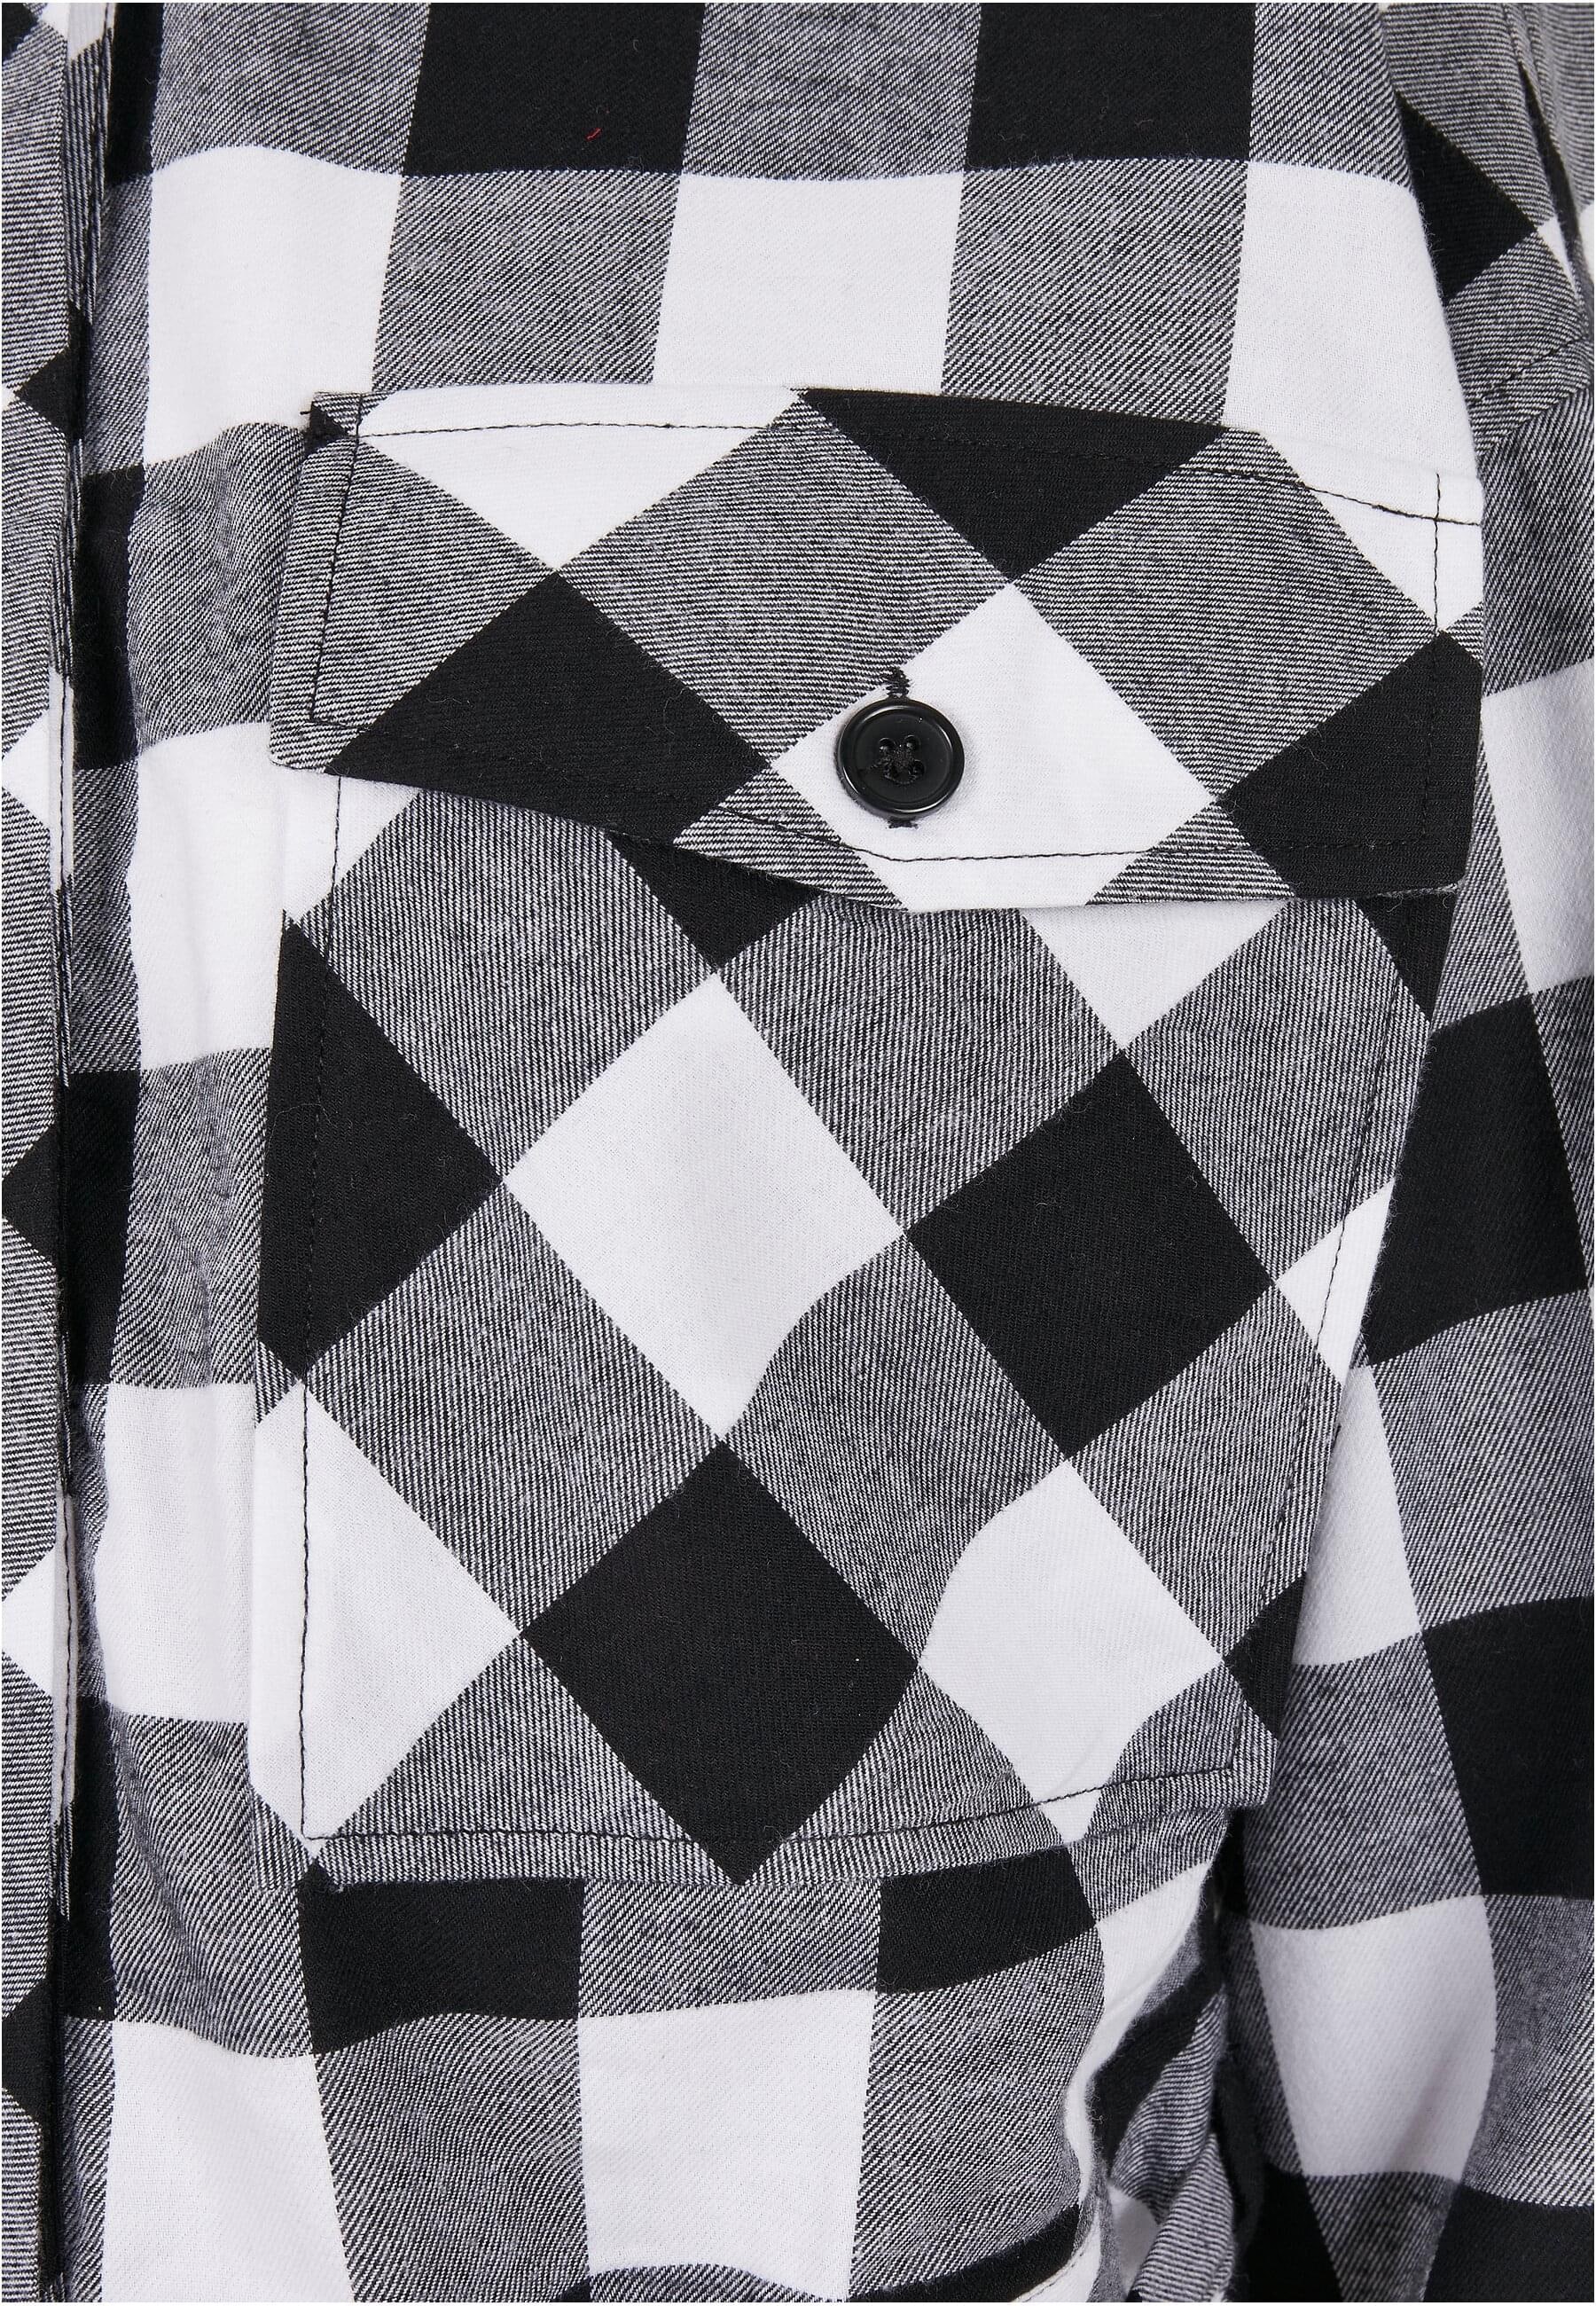 URBAN CLASSICS Langarmhemd »Damen Ladies Short Oversized Check Shirt«, (1 tlg.)